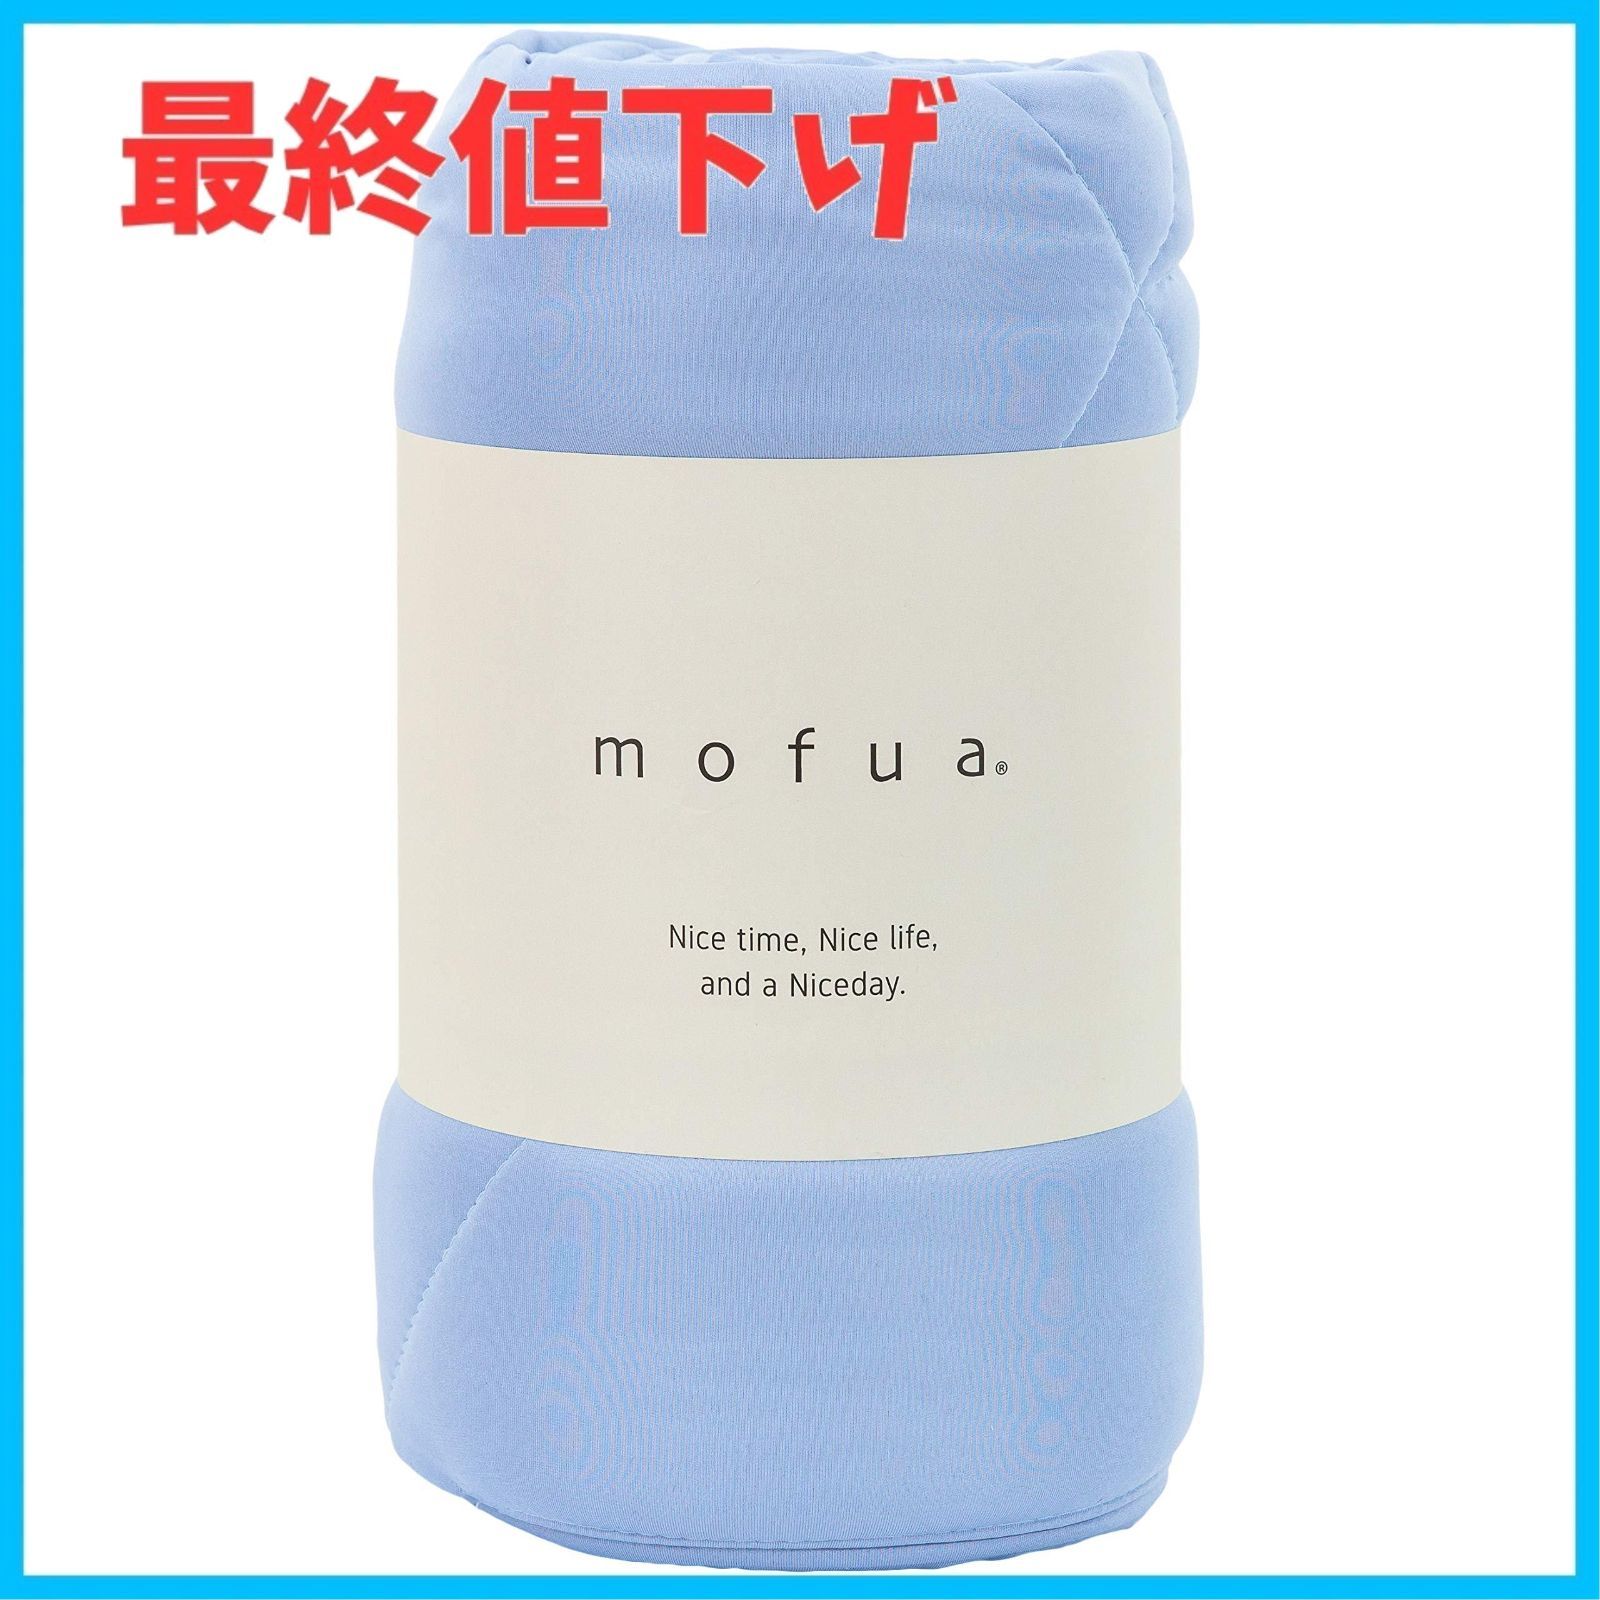 【色: 04)ブルー】mofua(モフア) 掛け布団 肌掛け キルトケット ブル